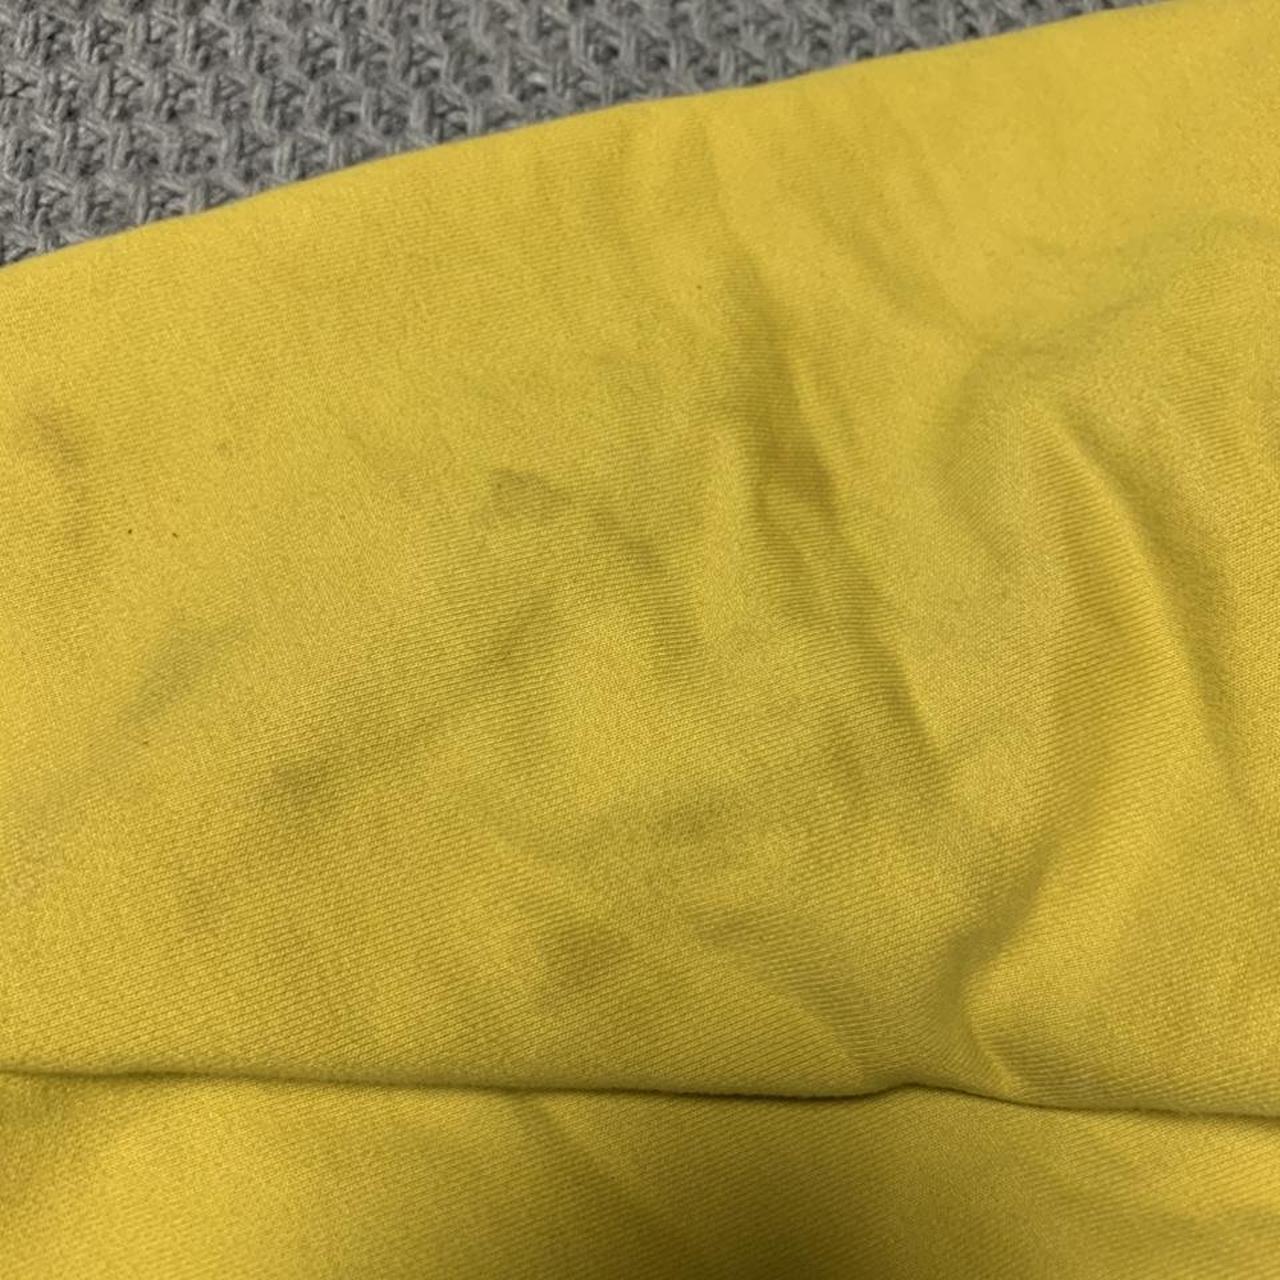 Corteiz yellow Alcatraz logo hoodie - size... - Depop